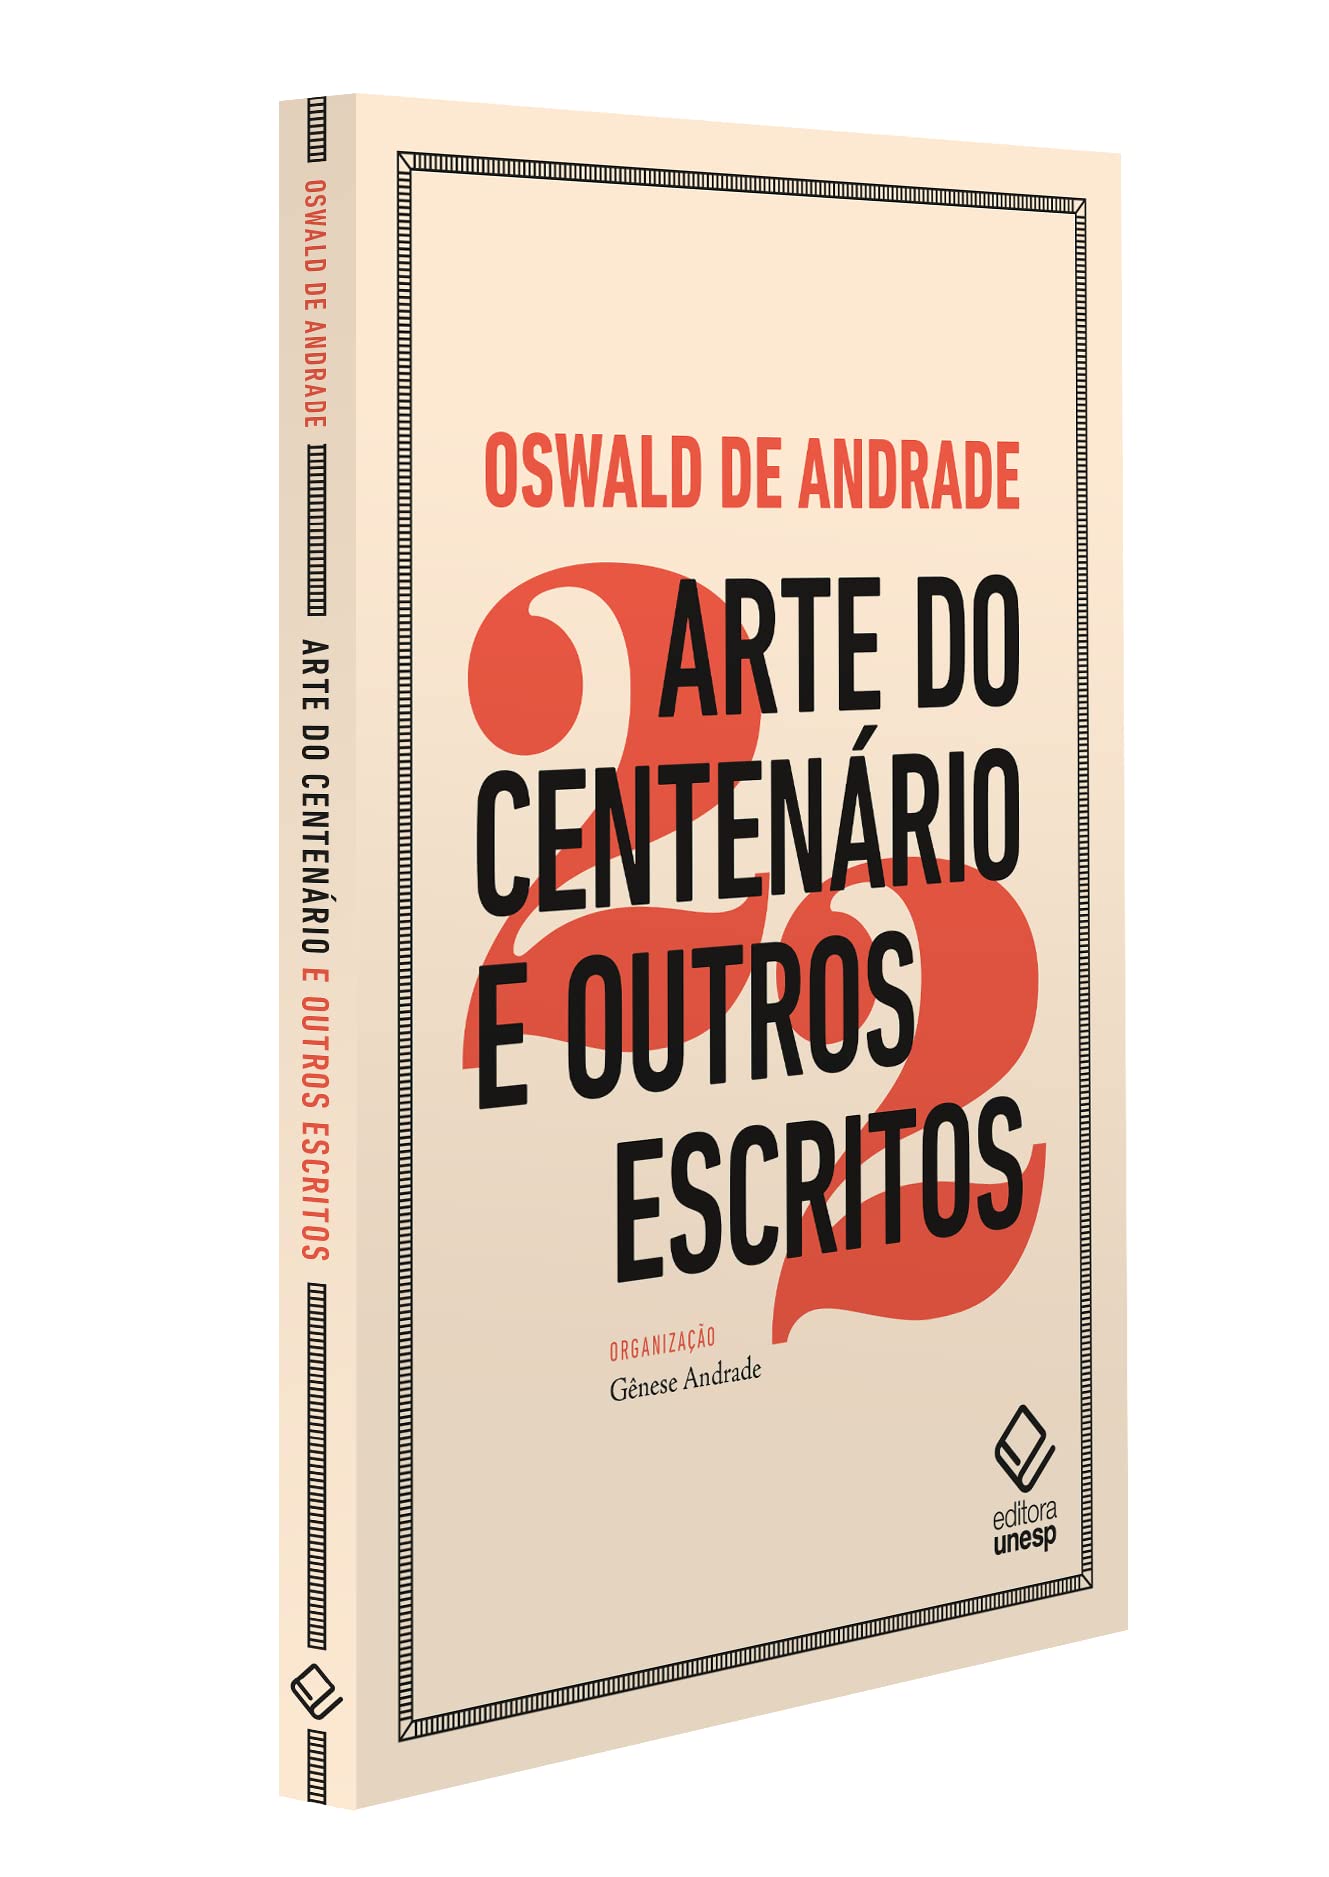 Textos centenários de Oswald de Andrade reunidos em livro